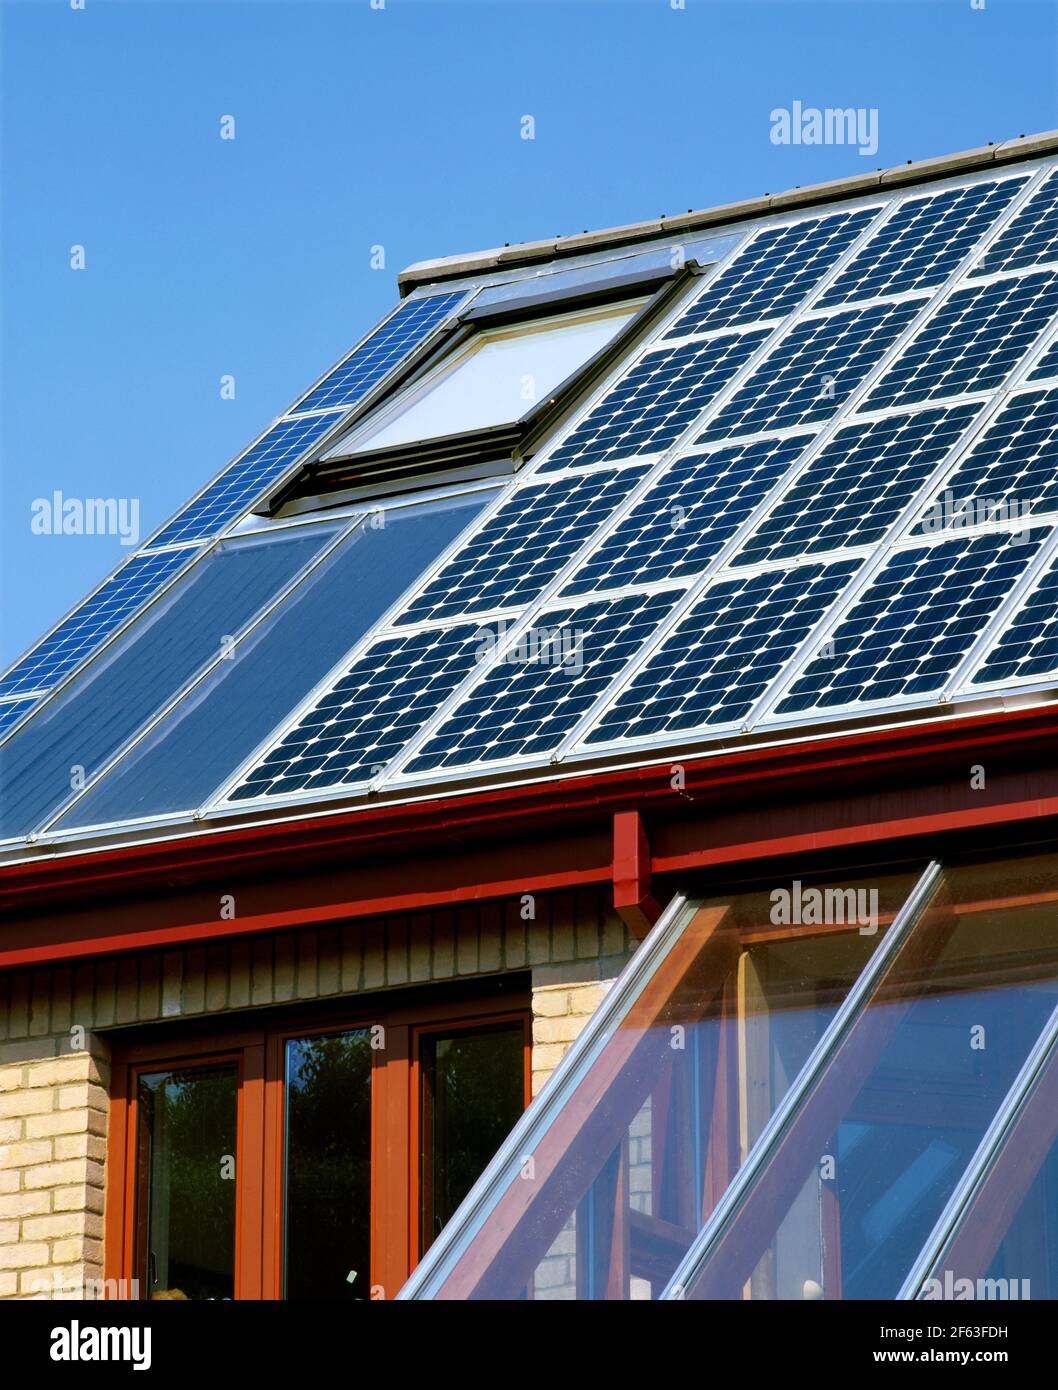 Cerca del techo trasero de la casa solar de Sue Roaf, Oxford, mostrando paneles solares para calentar agua y células fotovoltaicas para generar electricidad. Foto de stock